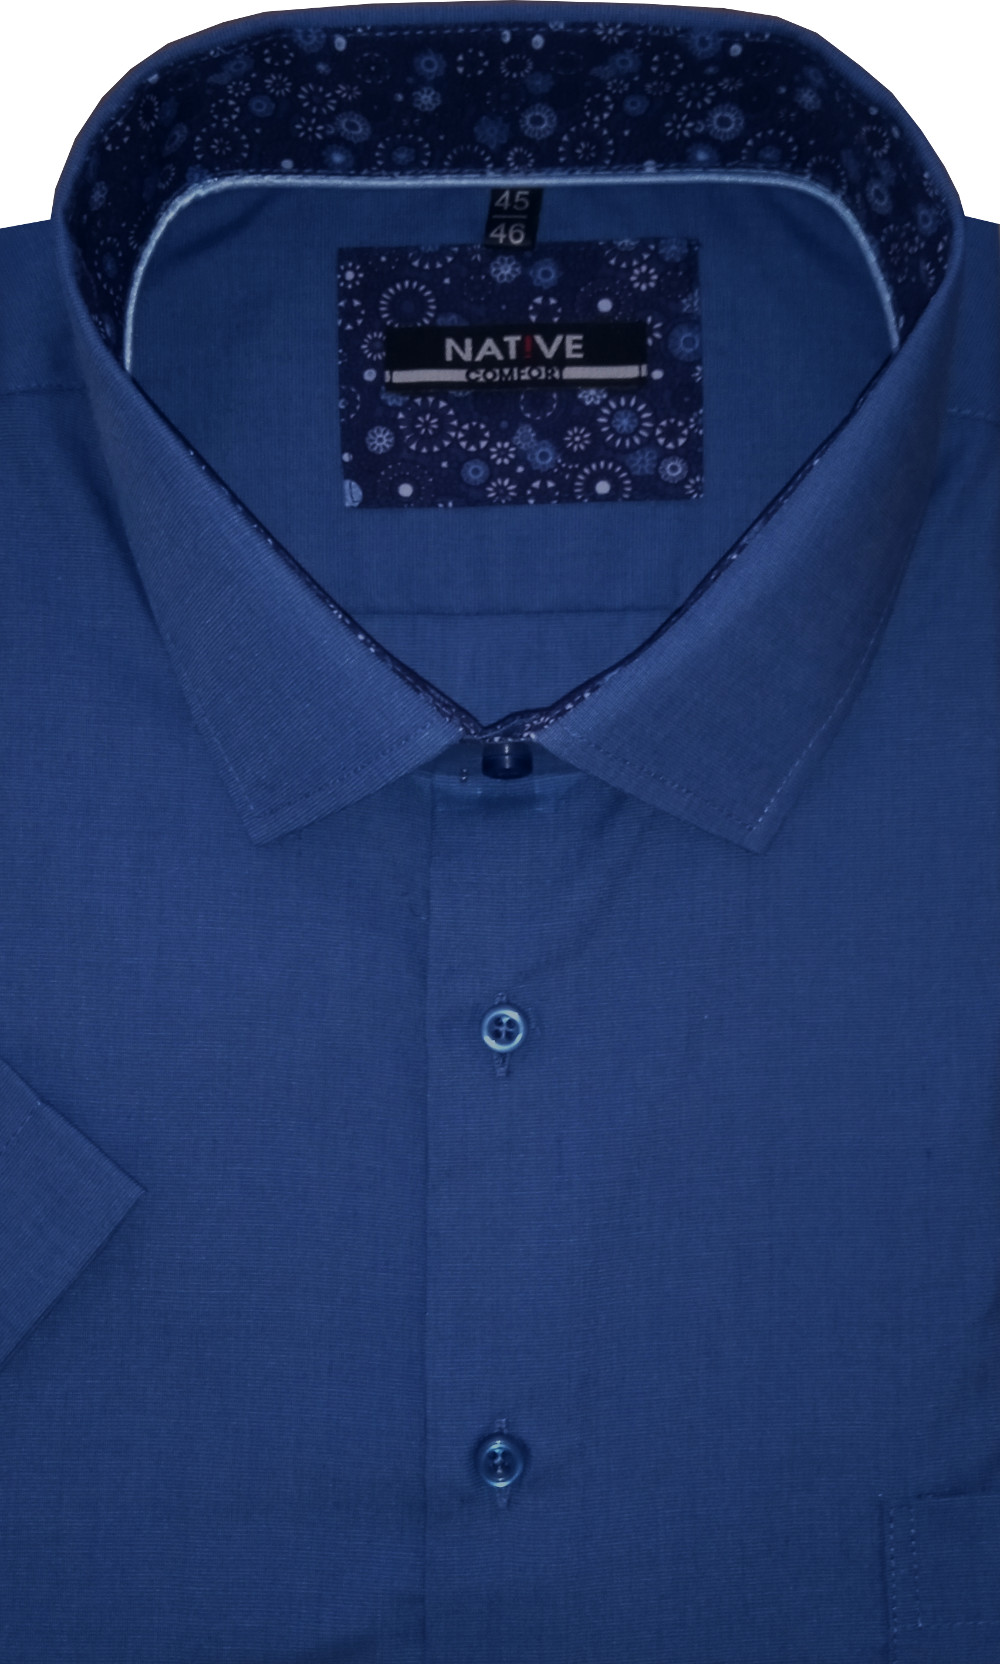 Pánská košile (modrá) s krátkým rukávem, vel. 45/46 - N220/317D